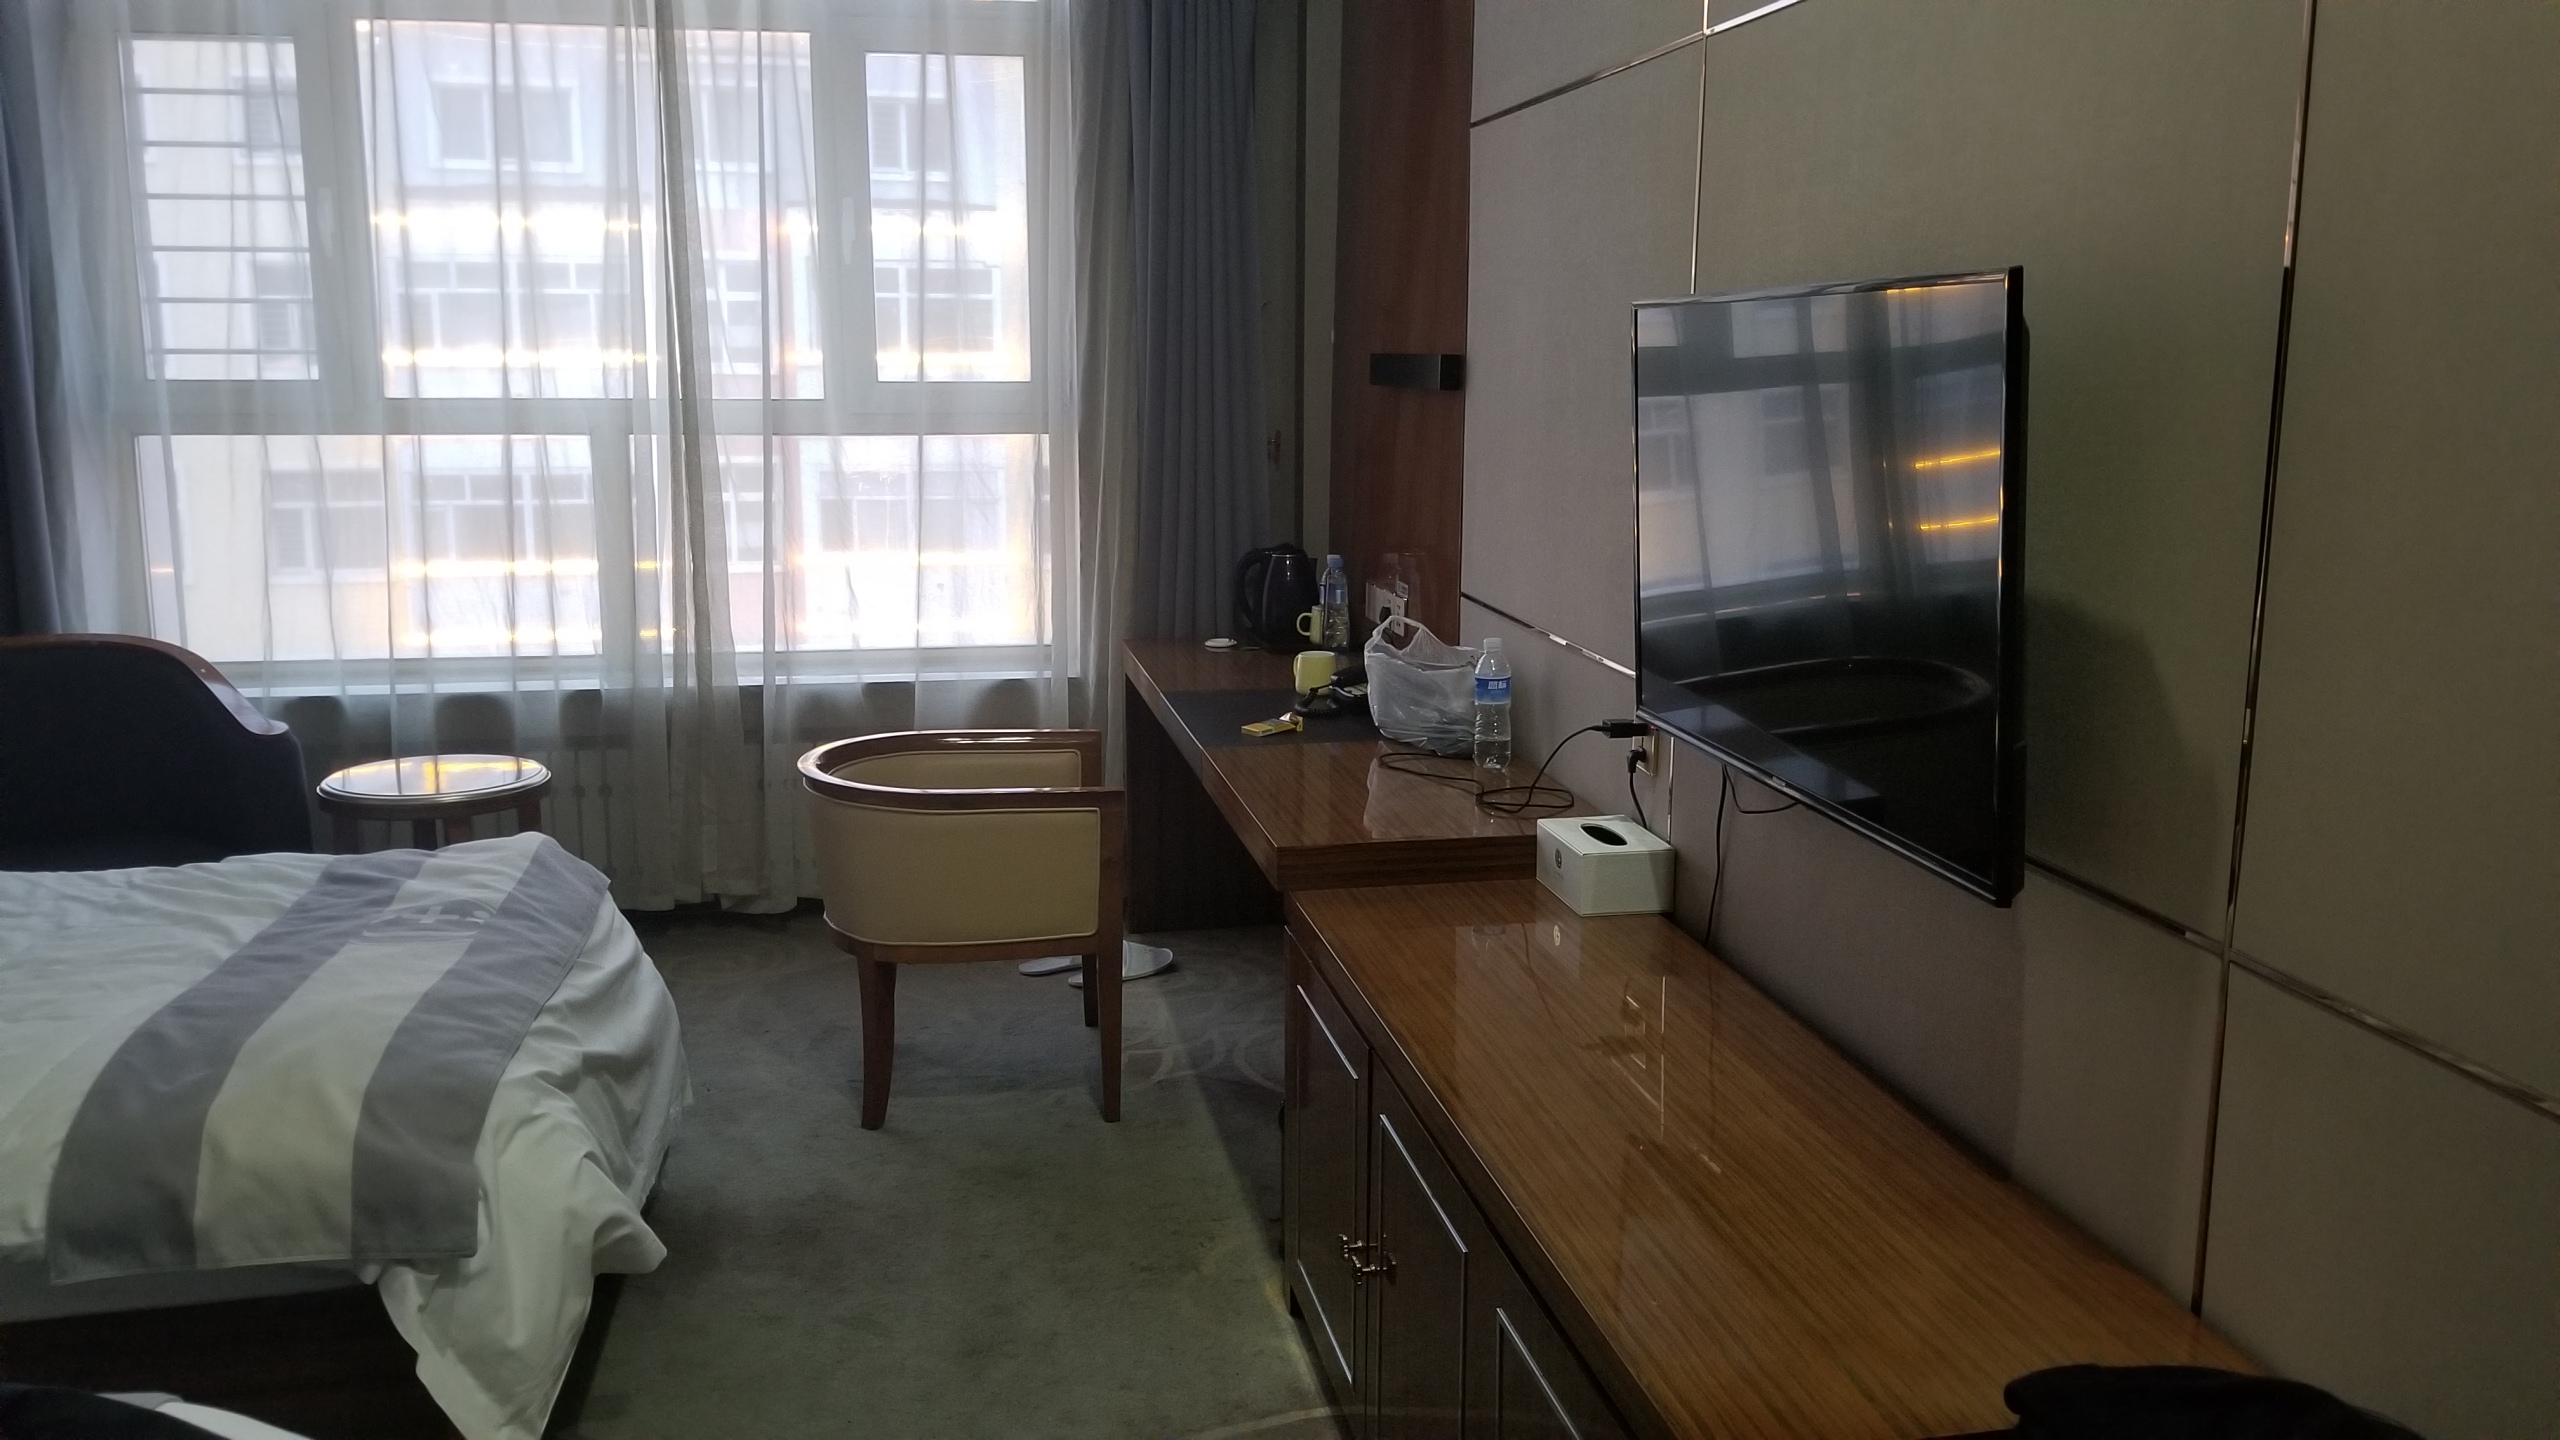 惠丽明珠的确是扎兰屯最好的酒店，设施很好，卫生干净，服务上乘。安静，整洁，适合休息。特色：窗帘是自动